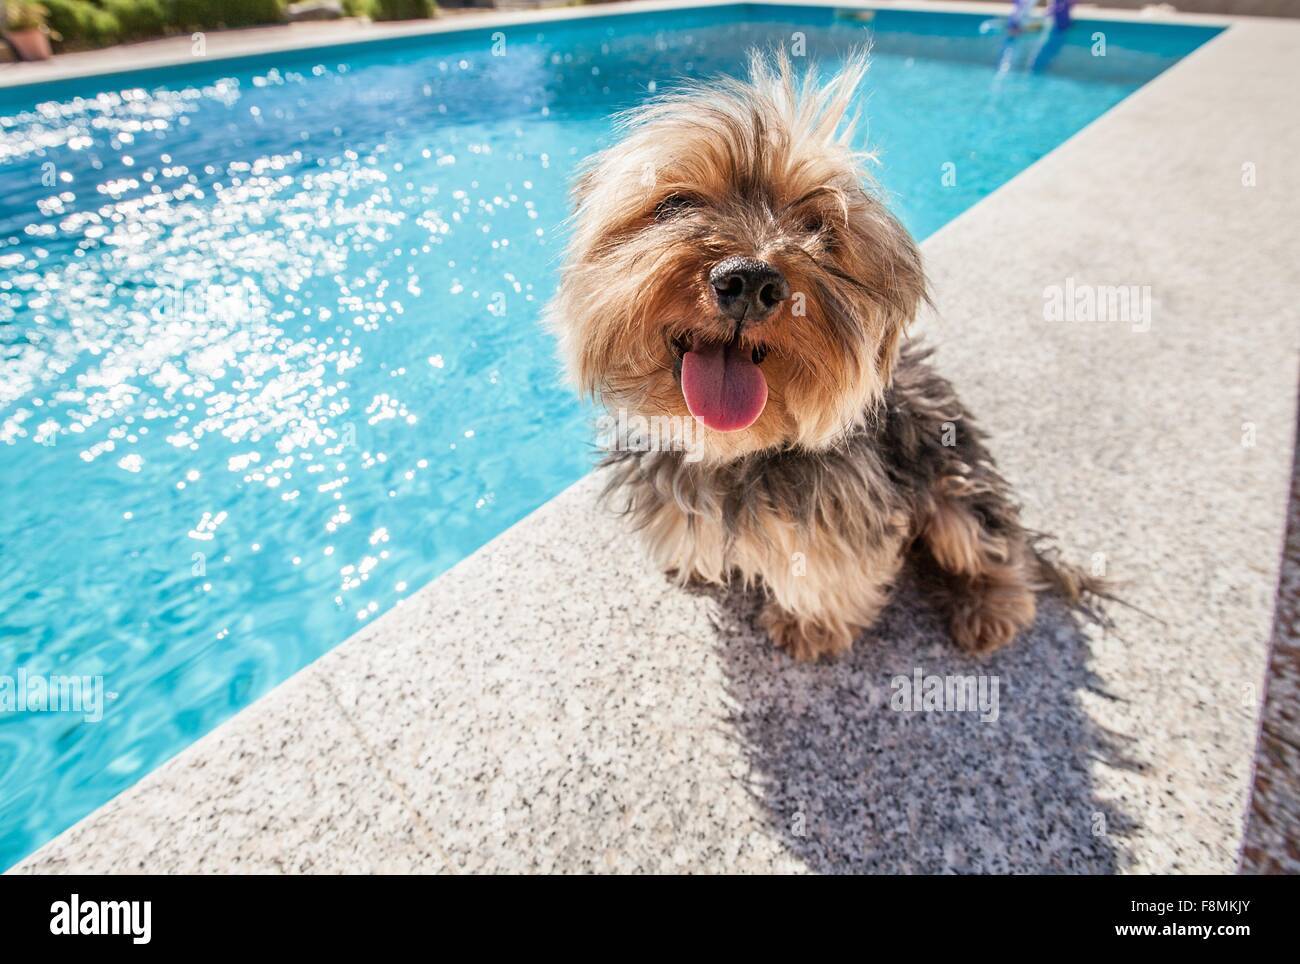 Perro sentado por la piscina en día soleado Foto de stock